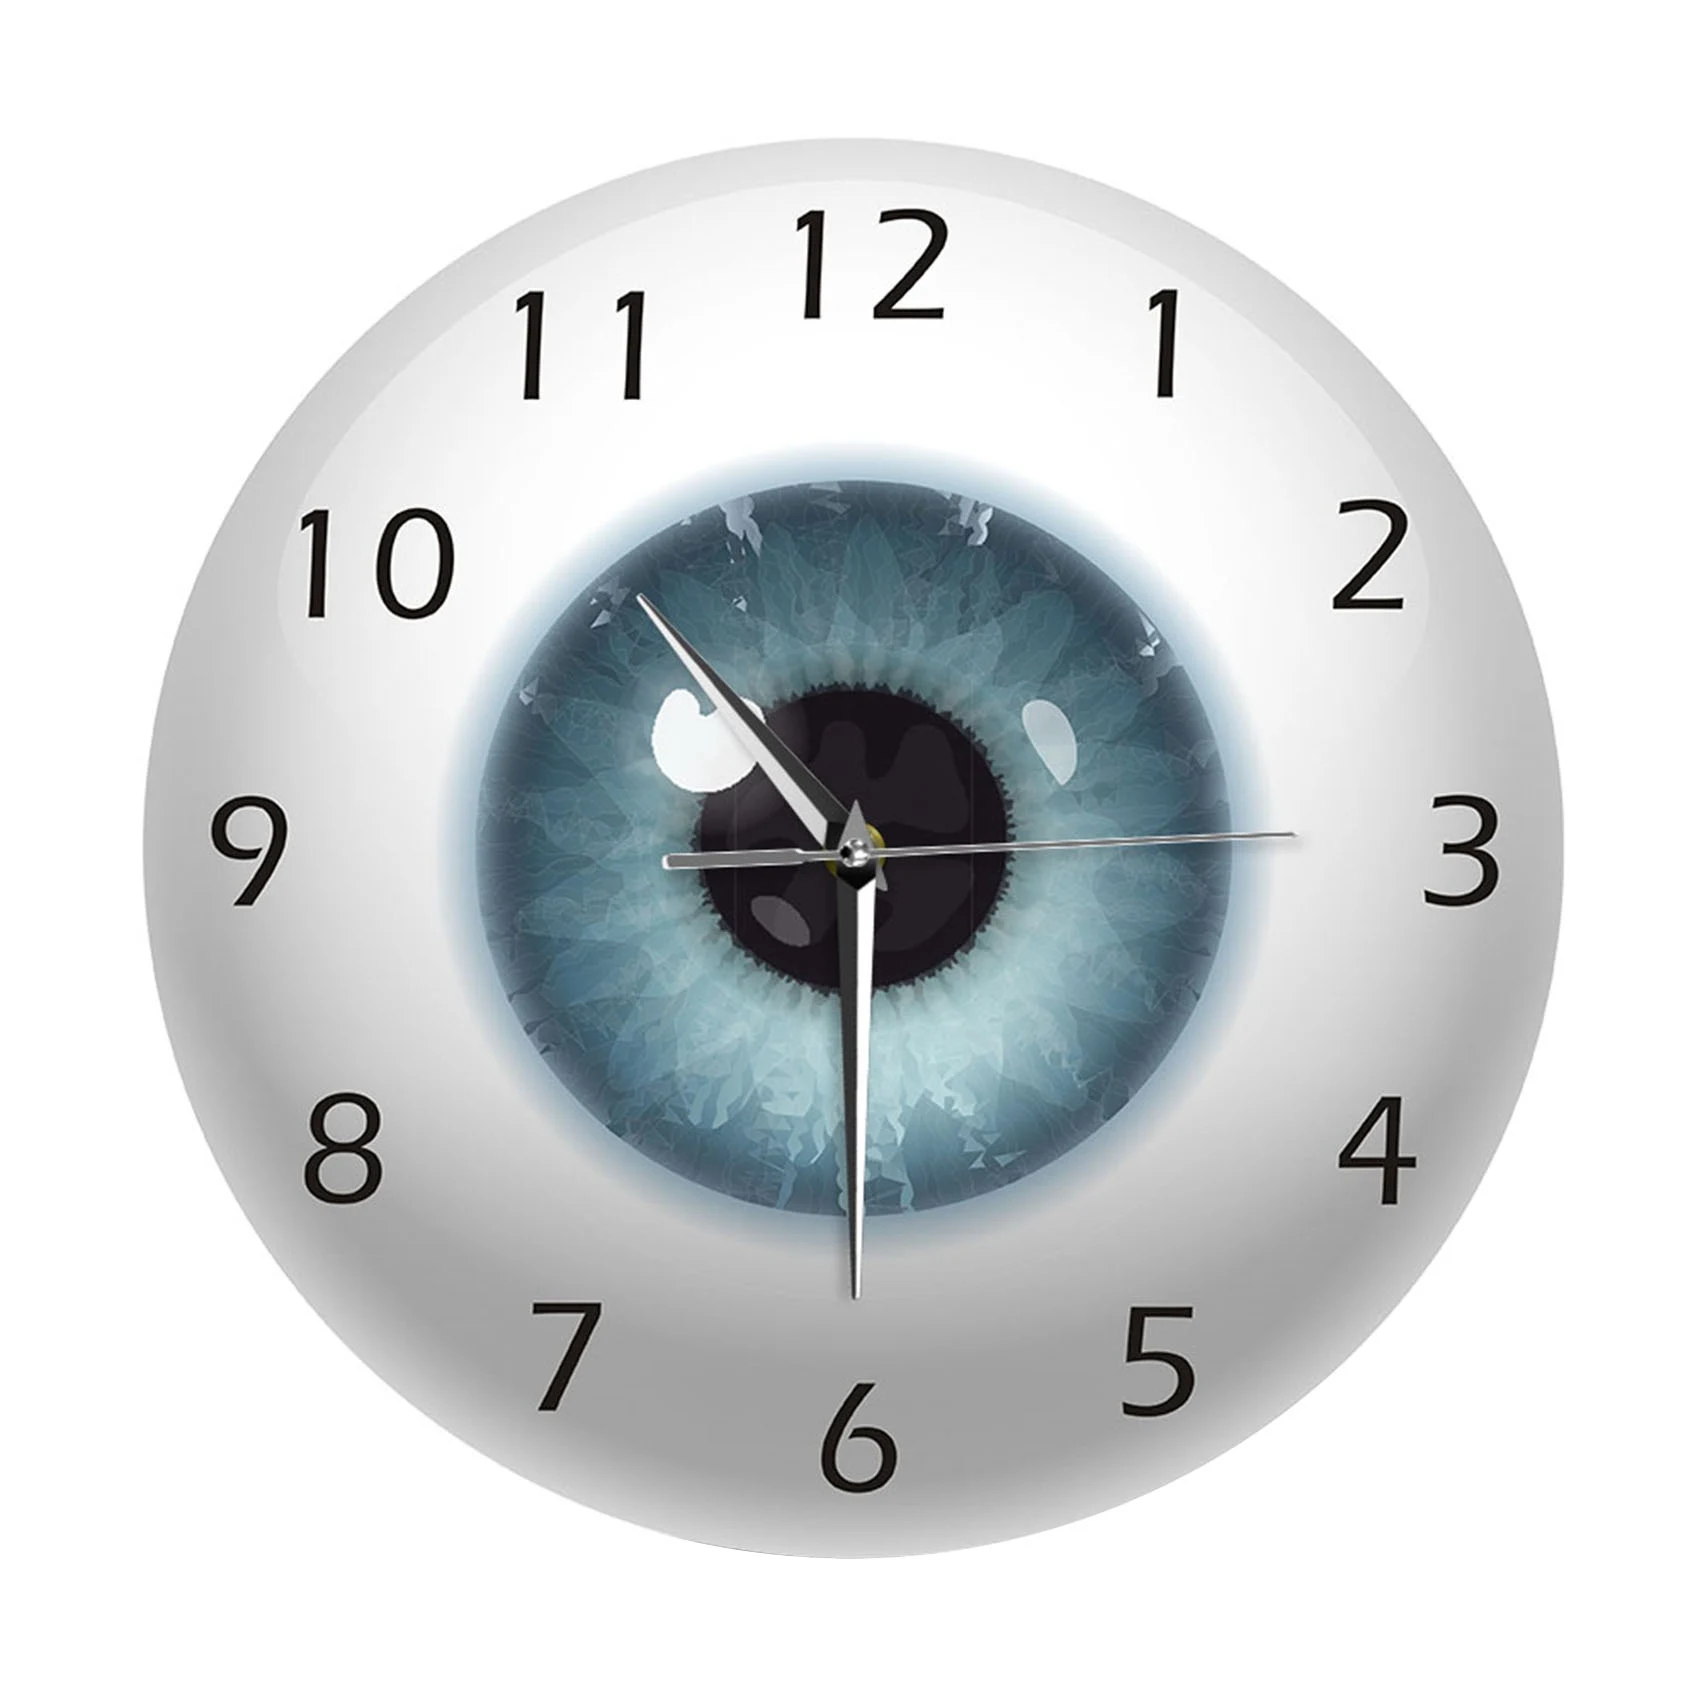 

Глазные часы с красивым контактом, глазное ядро зрачка, обзор офтальмологии, бесшумные настенные часы, оптический магазин, новинка, настенные часы